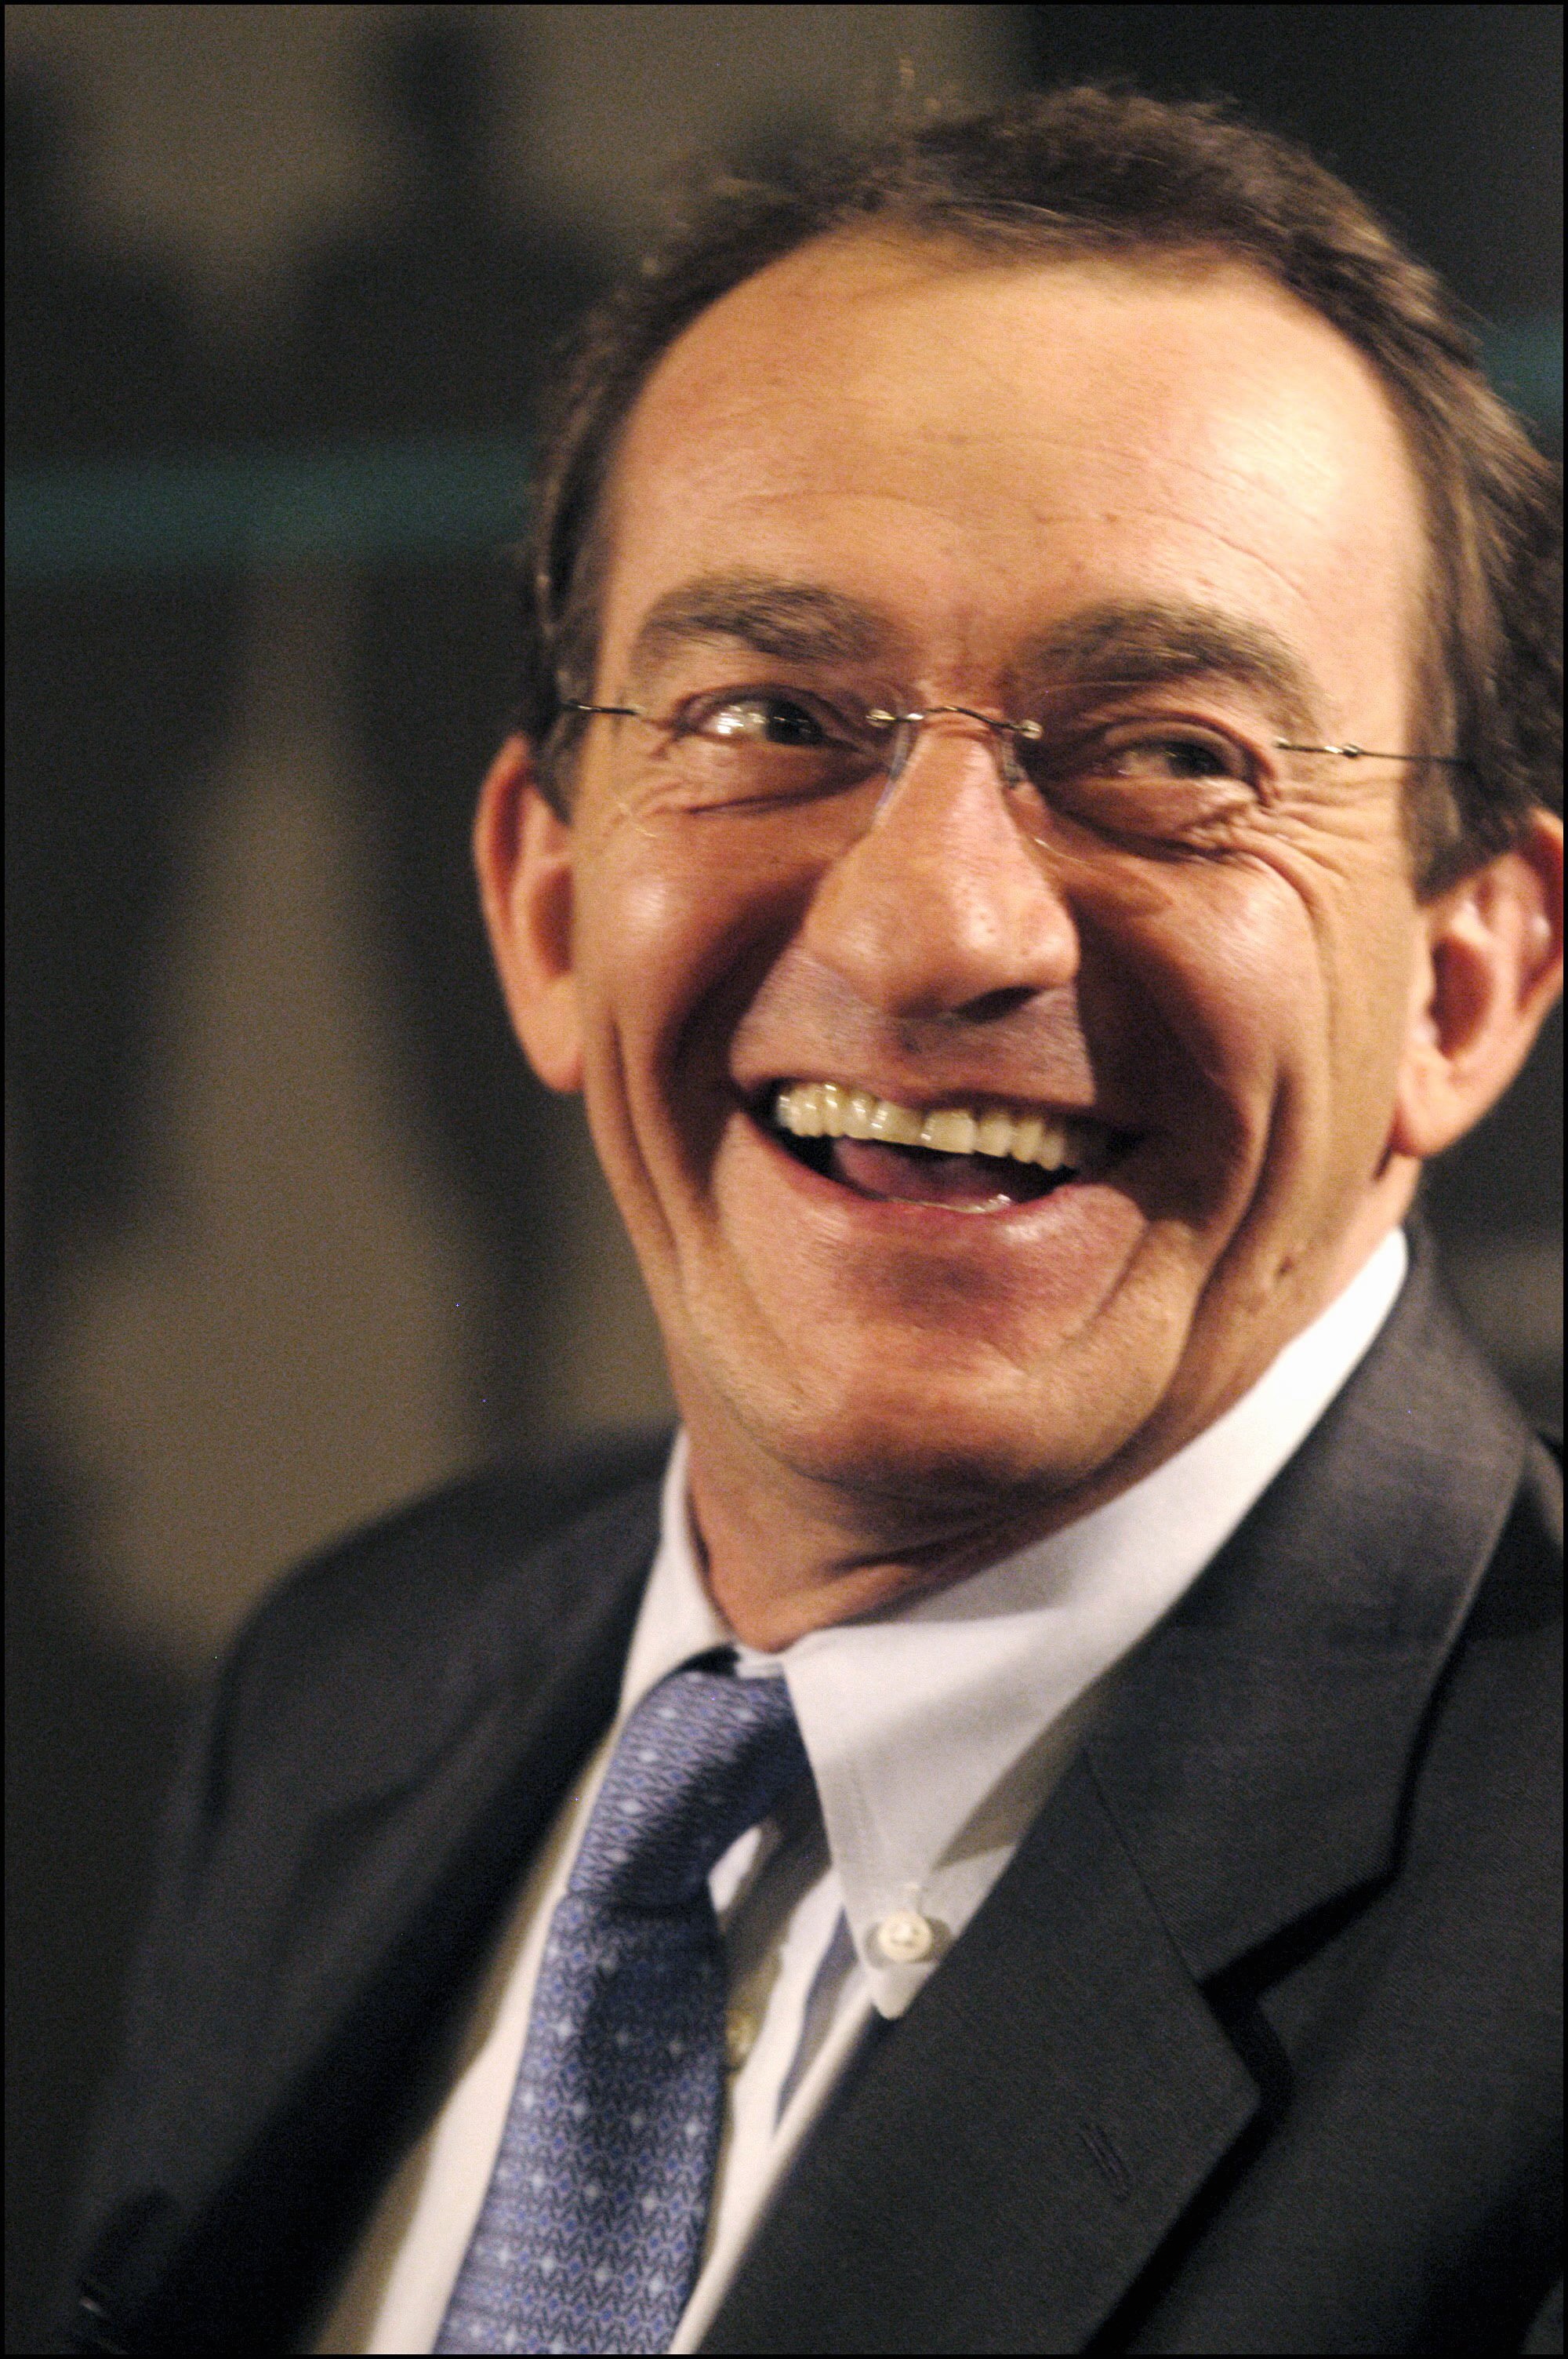 Jean-Pierre Pernaut souriant pendant une conférence de presse | Source : Getty Images